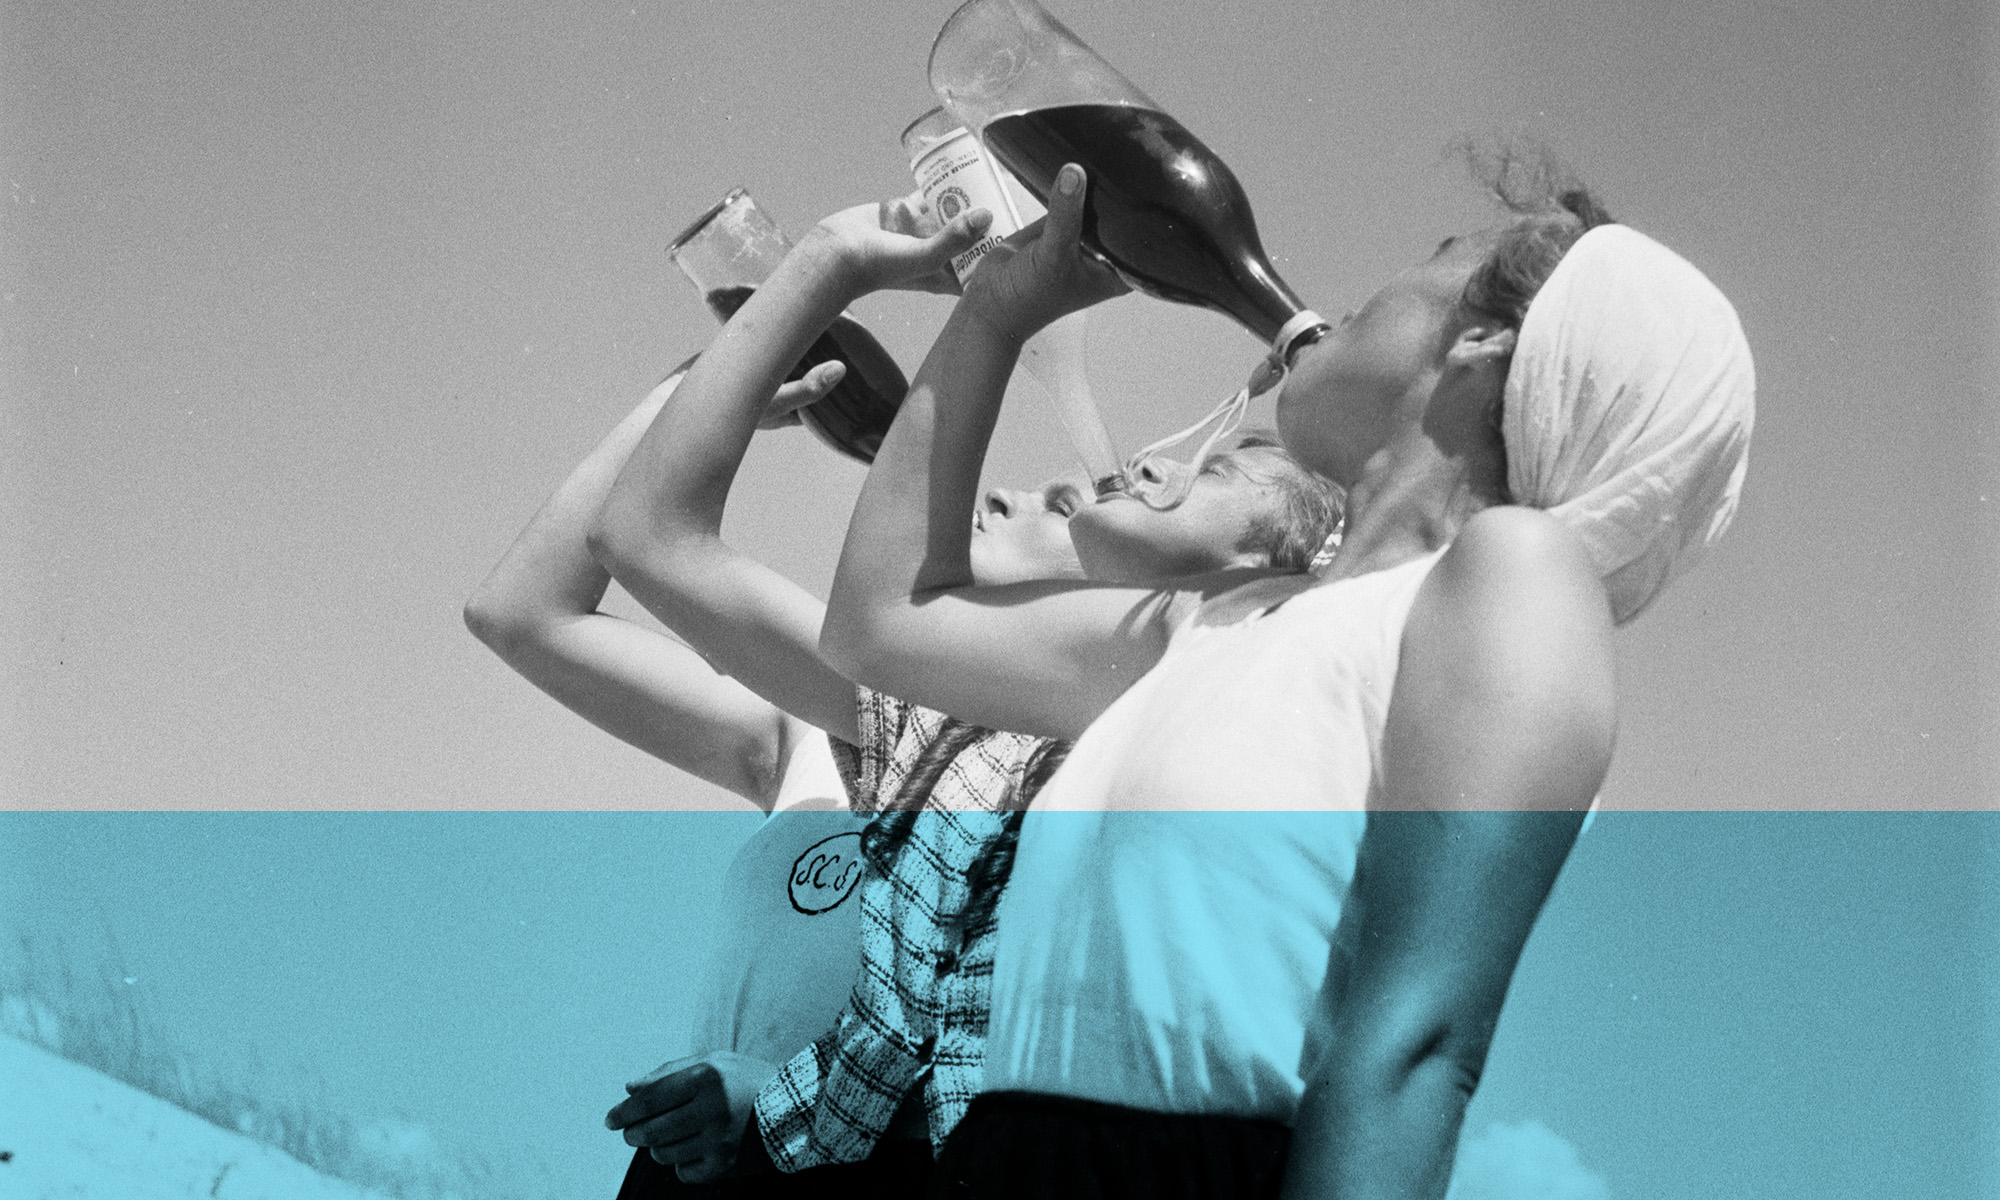 Fotografie dreier aus Flaschen trinkender Personen vor freiem Himmel